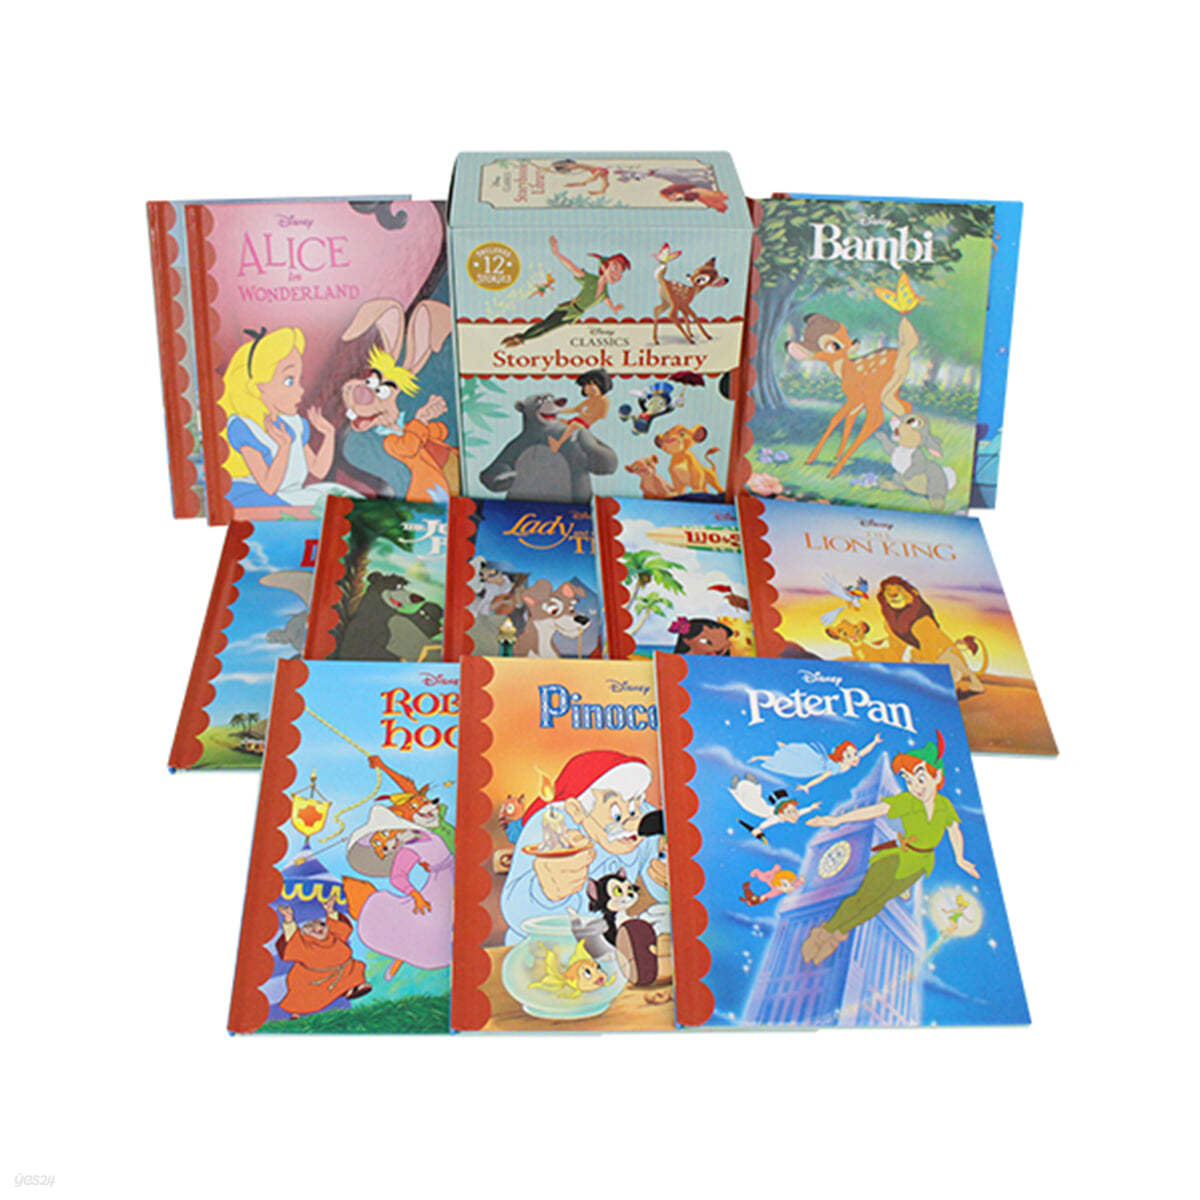 디즈니 클래식 스토리북 12종 세트 : Disney Classics Storybook Library 